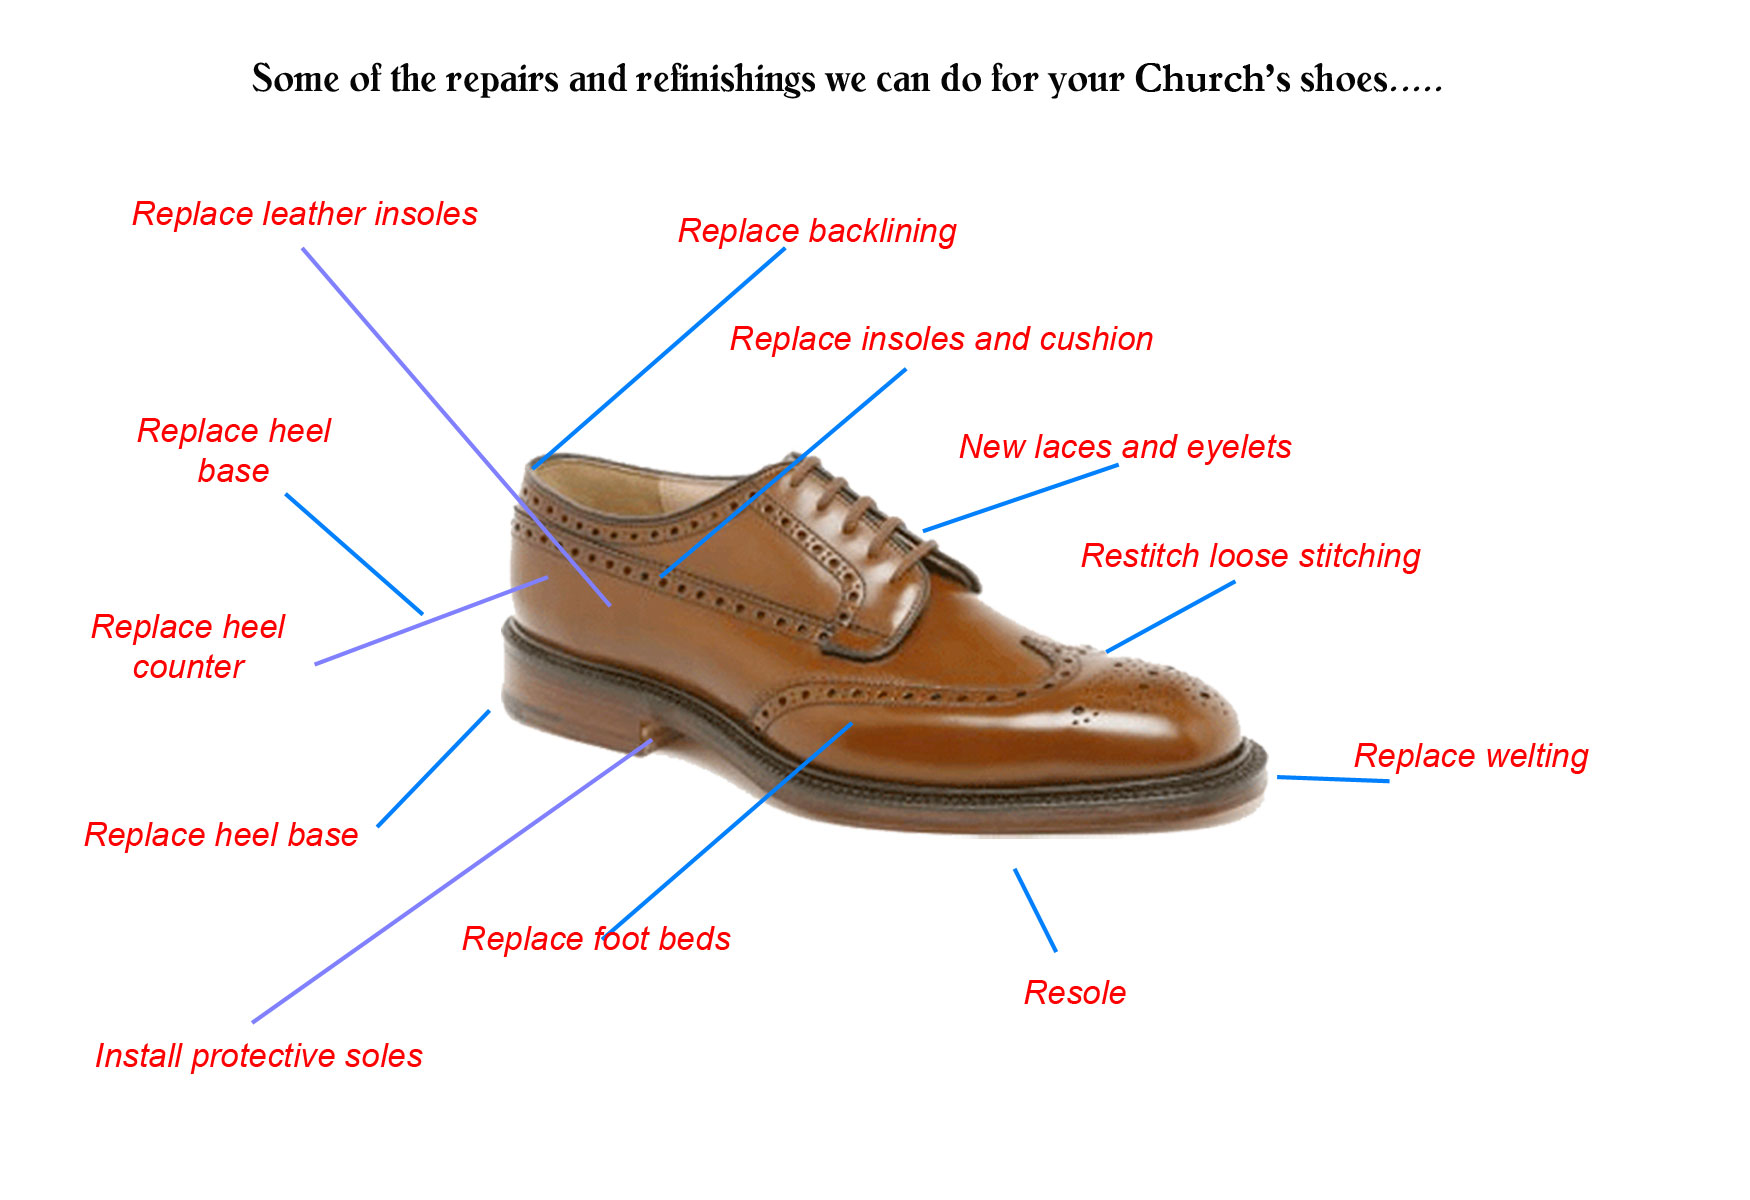 Shoe Repair, Recrafting and Resoling in 